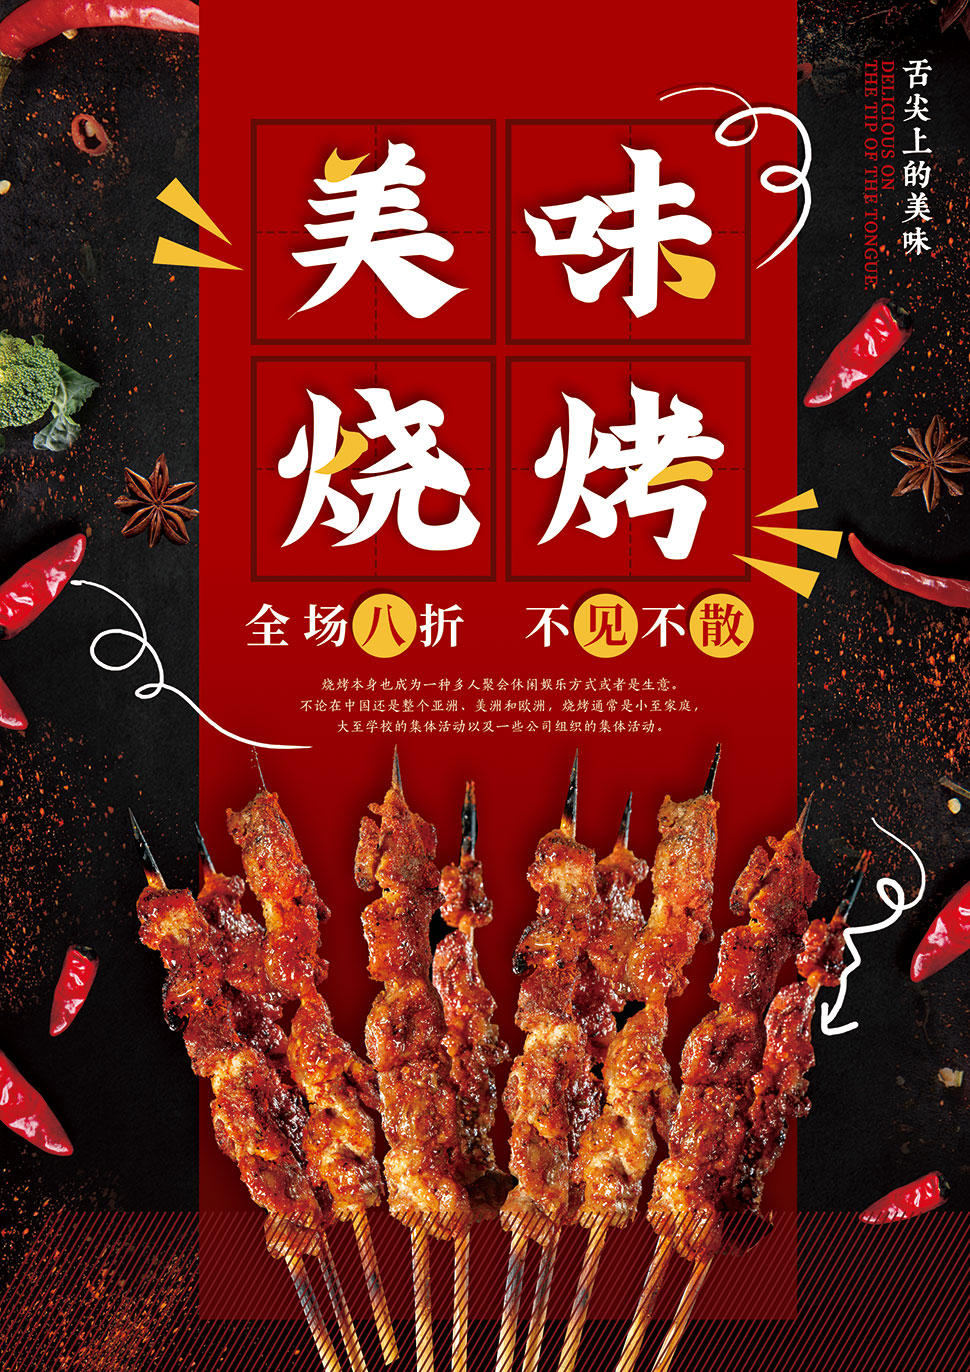 大图首页 psd素材 广告海报 > 素材信息         韩式烤肉宣传单设计